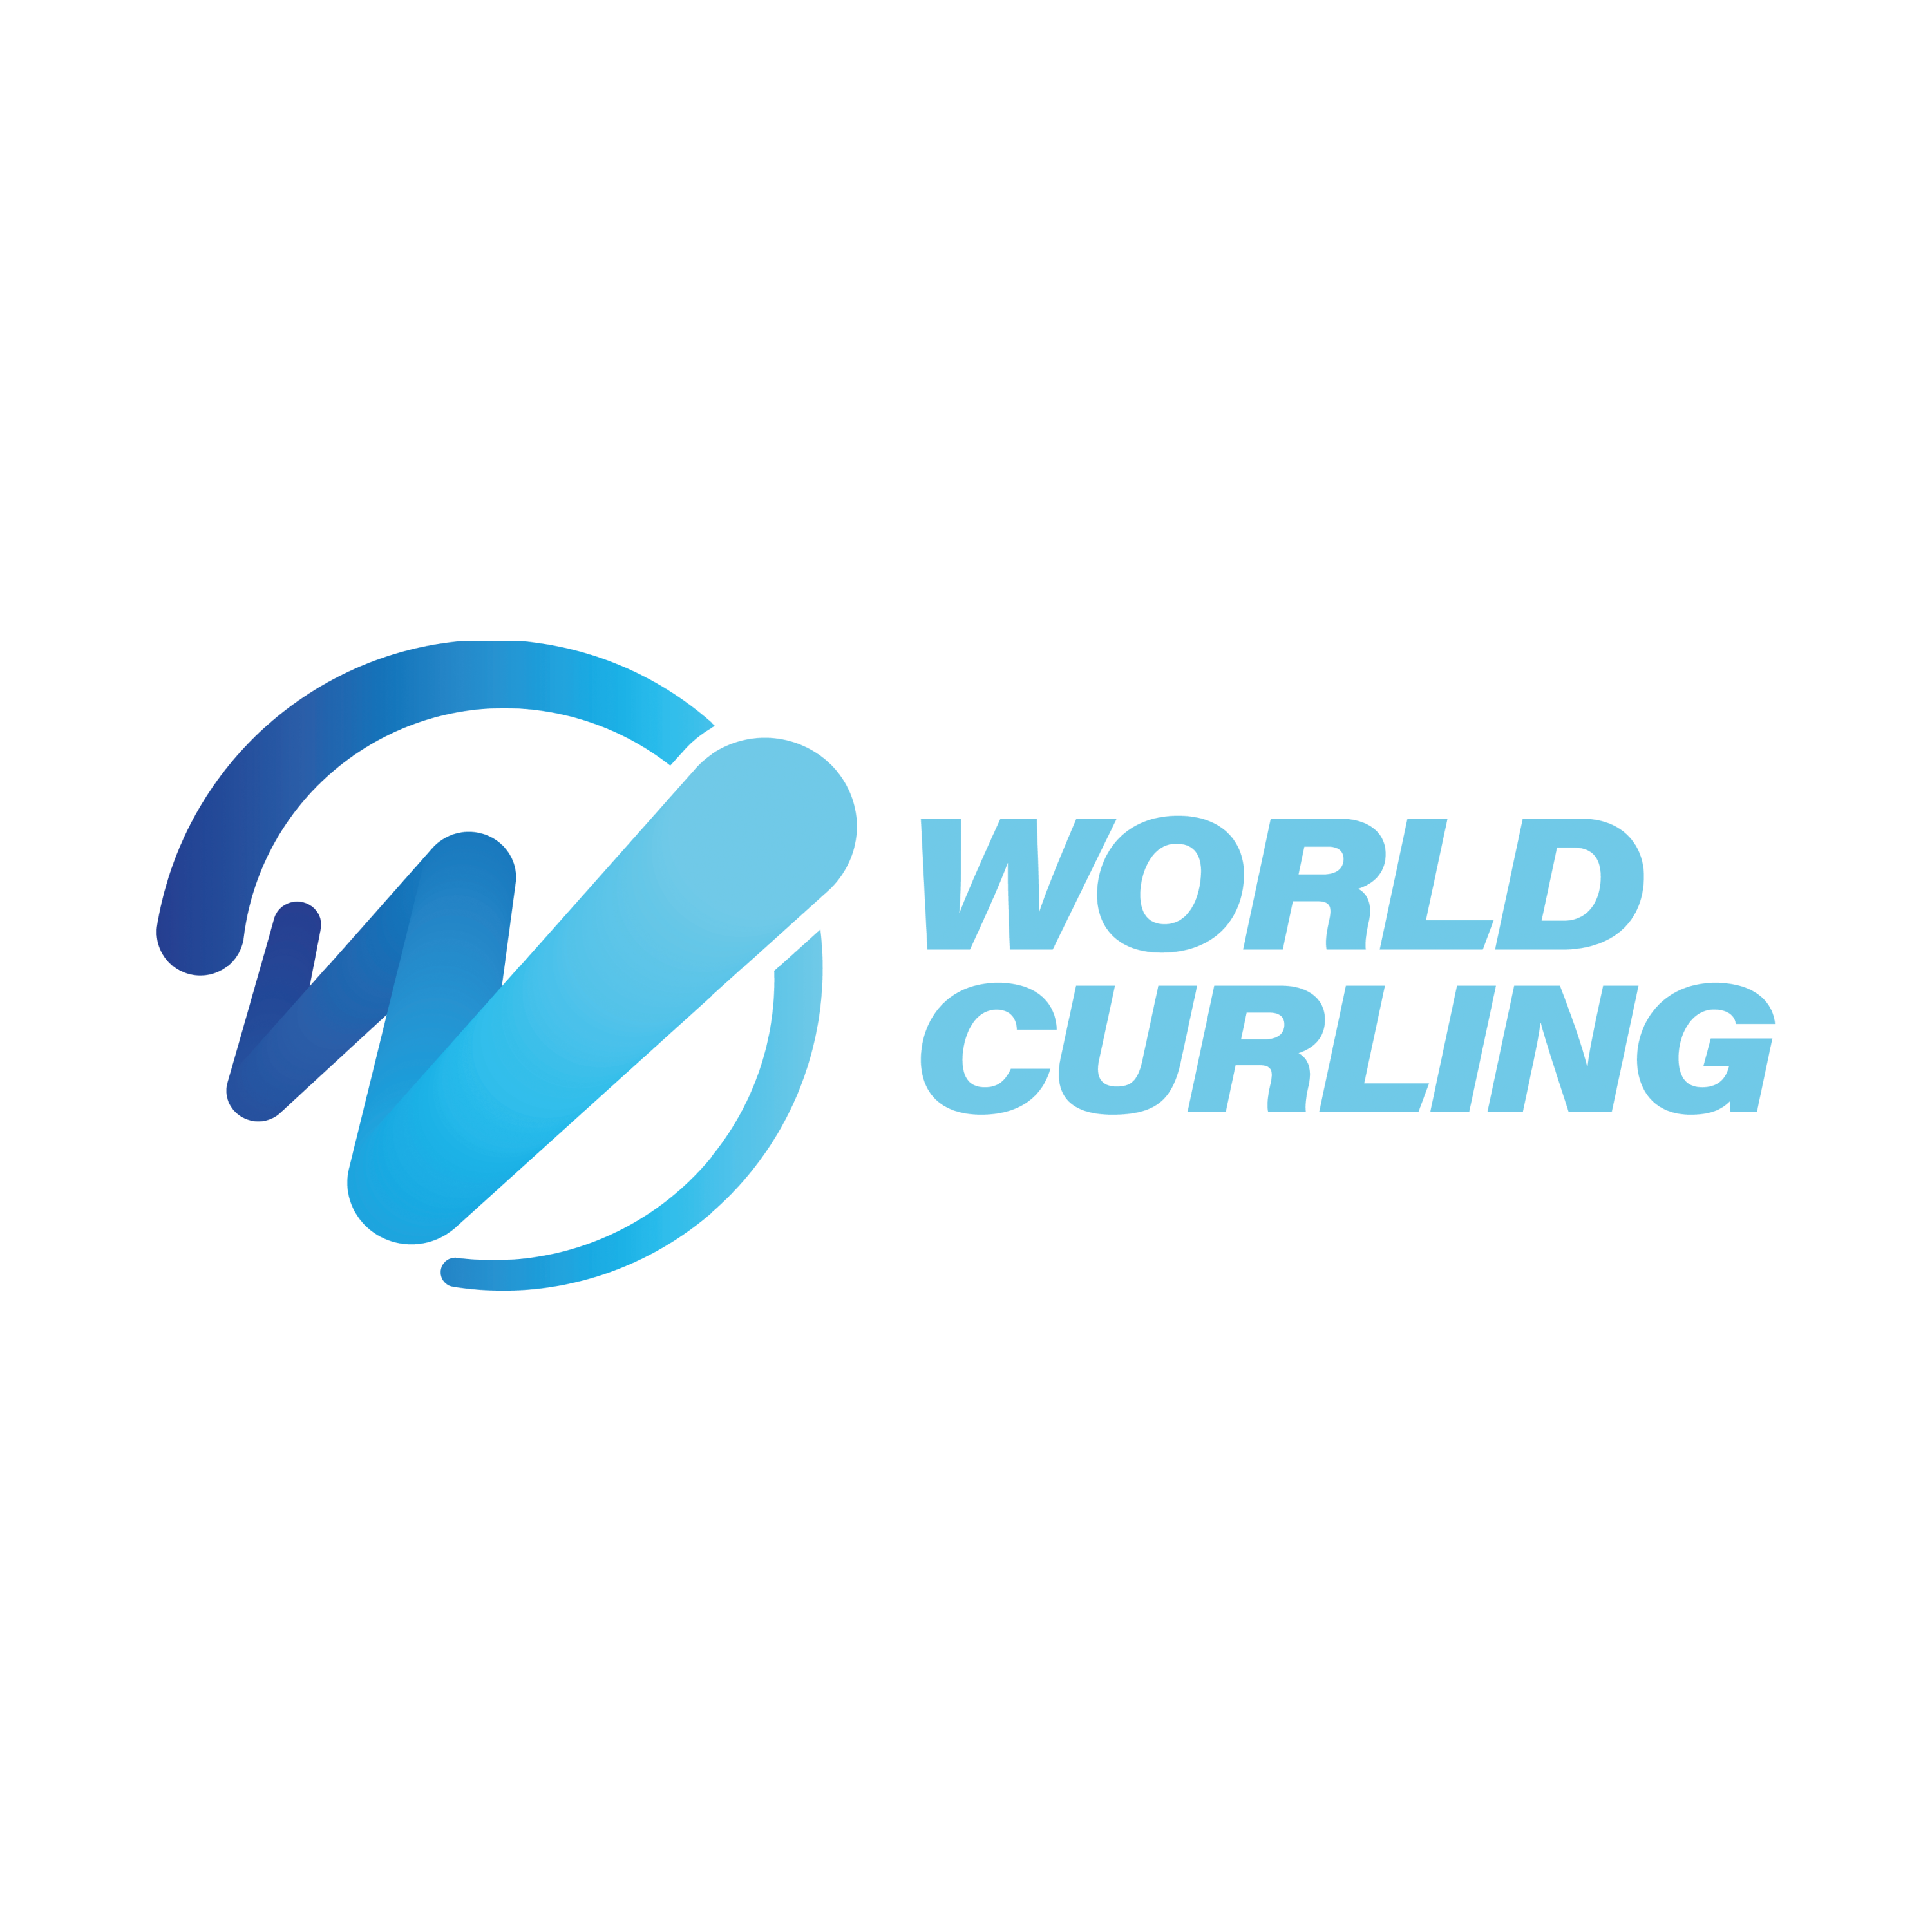 World Curling  Transparent Image